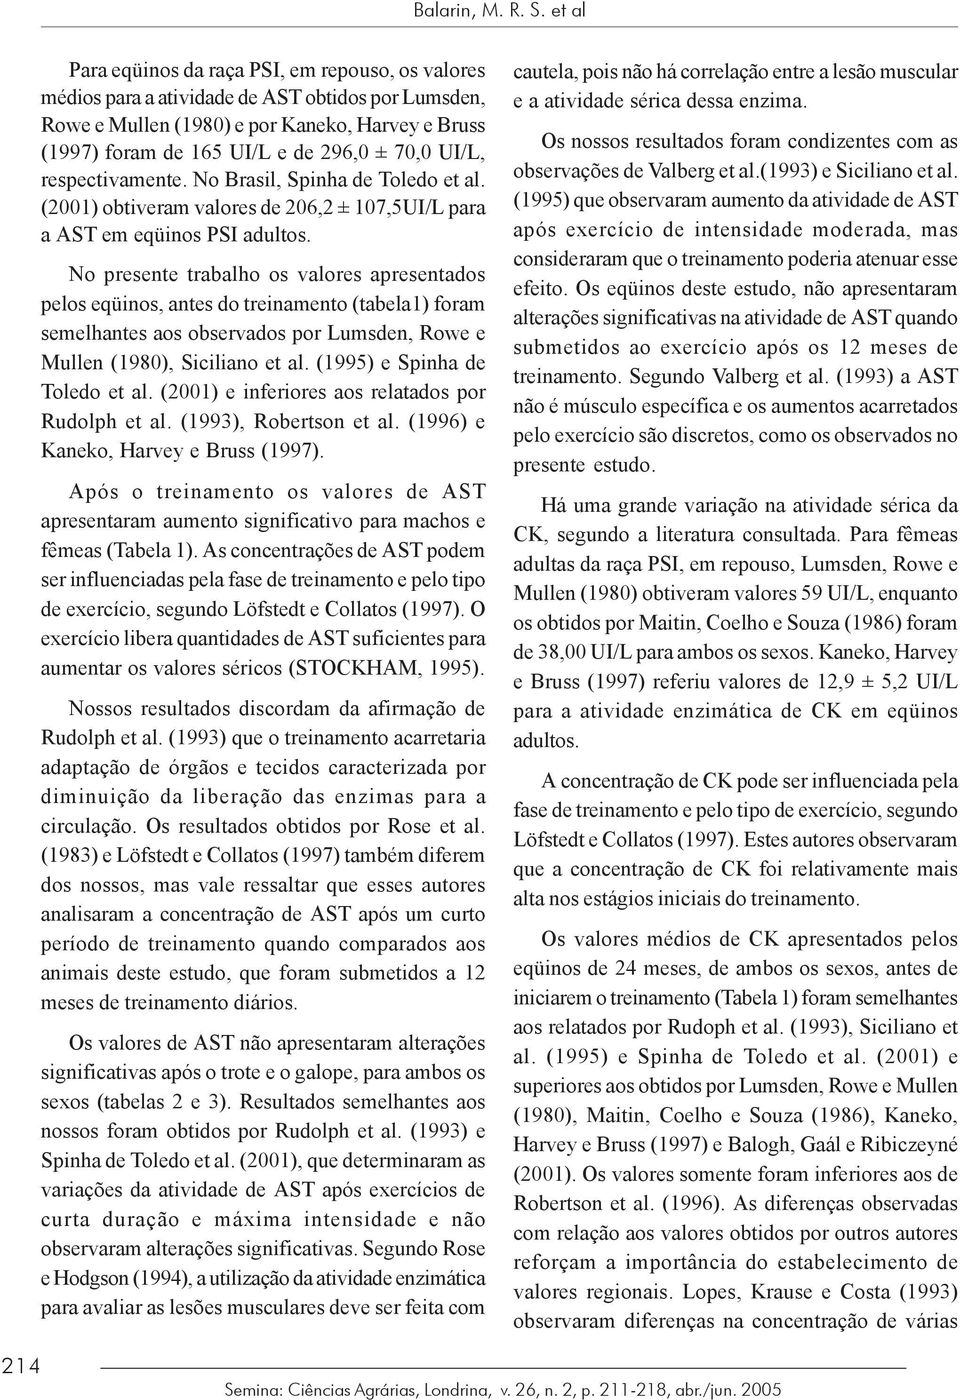 UI/L, respectivamente. No Brasil, Spinha de Toledo et al. (2001) obtiveram valores de 206,2 ± 107,5UI/L para a AST em eqüinos PSI adultos.